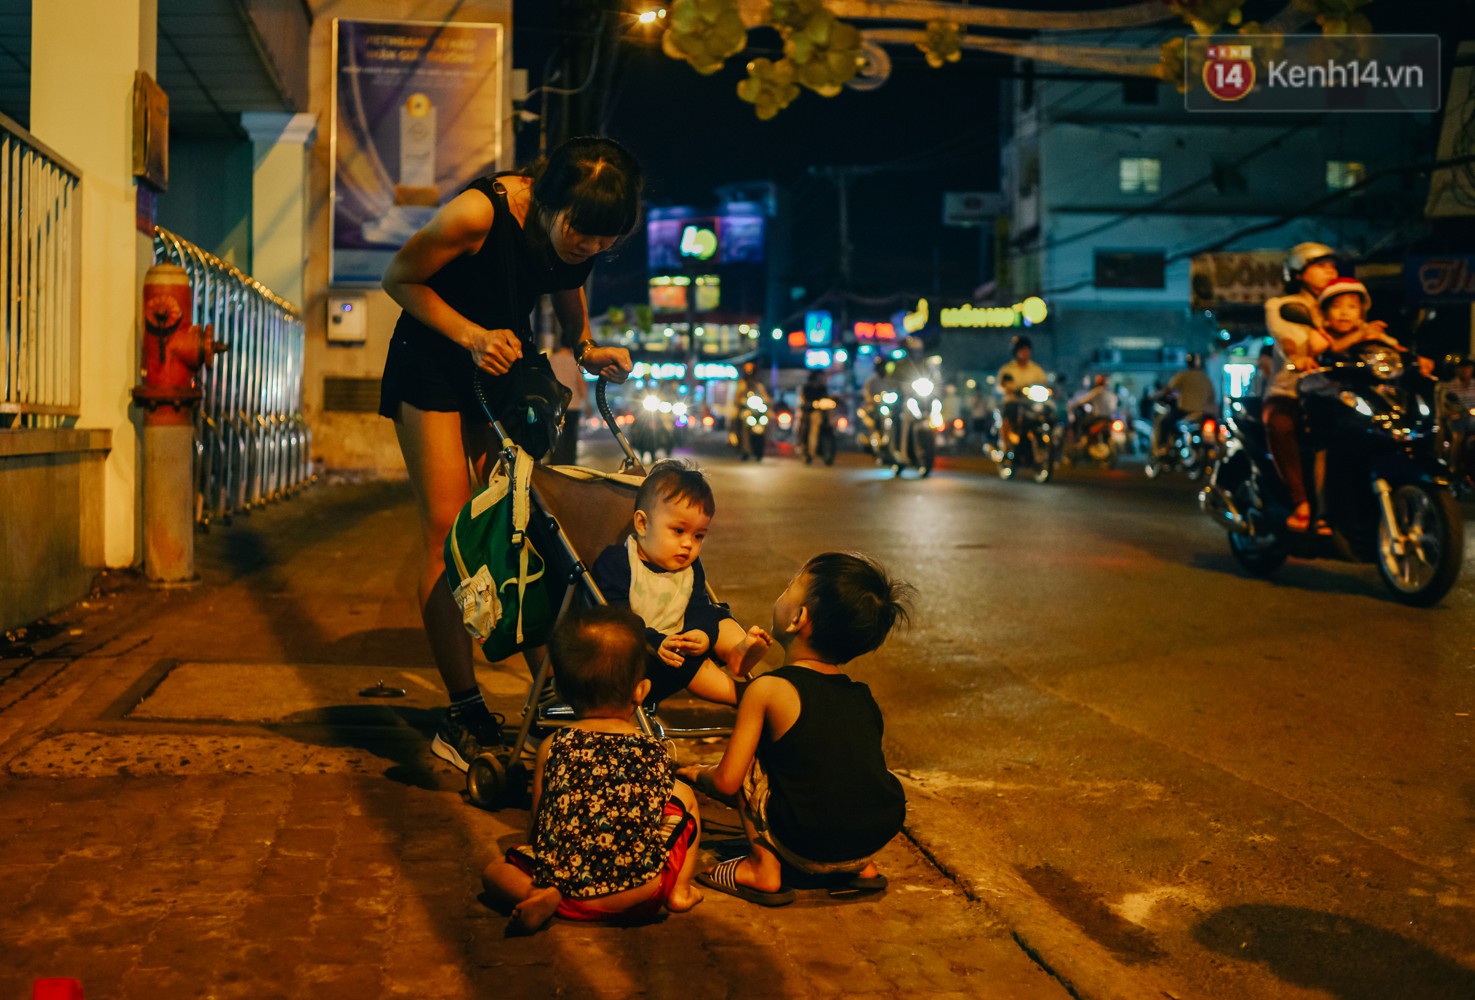 Phía sau hình ảnh 2 chiếc võng đong đưa bên lò khoai nướng của người mẹ nghèo ở Sài Gòn - Ảnh 5.